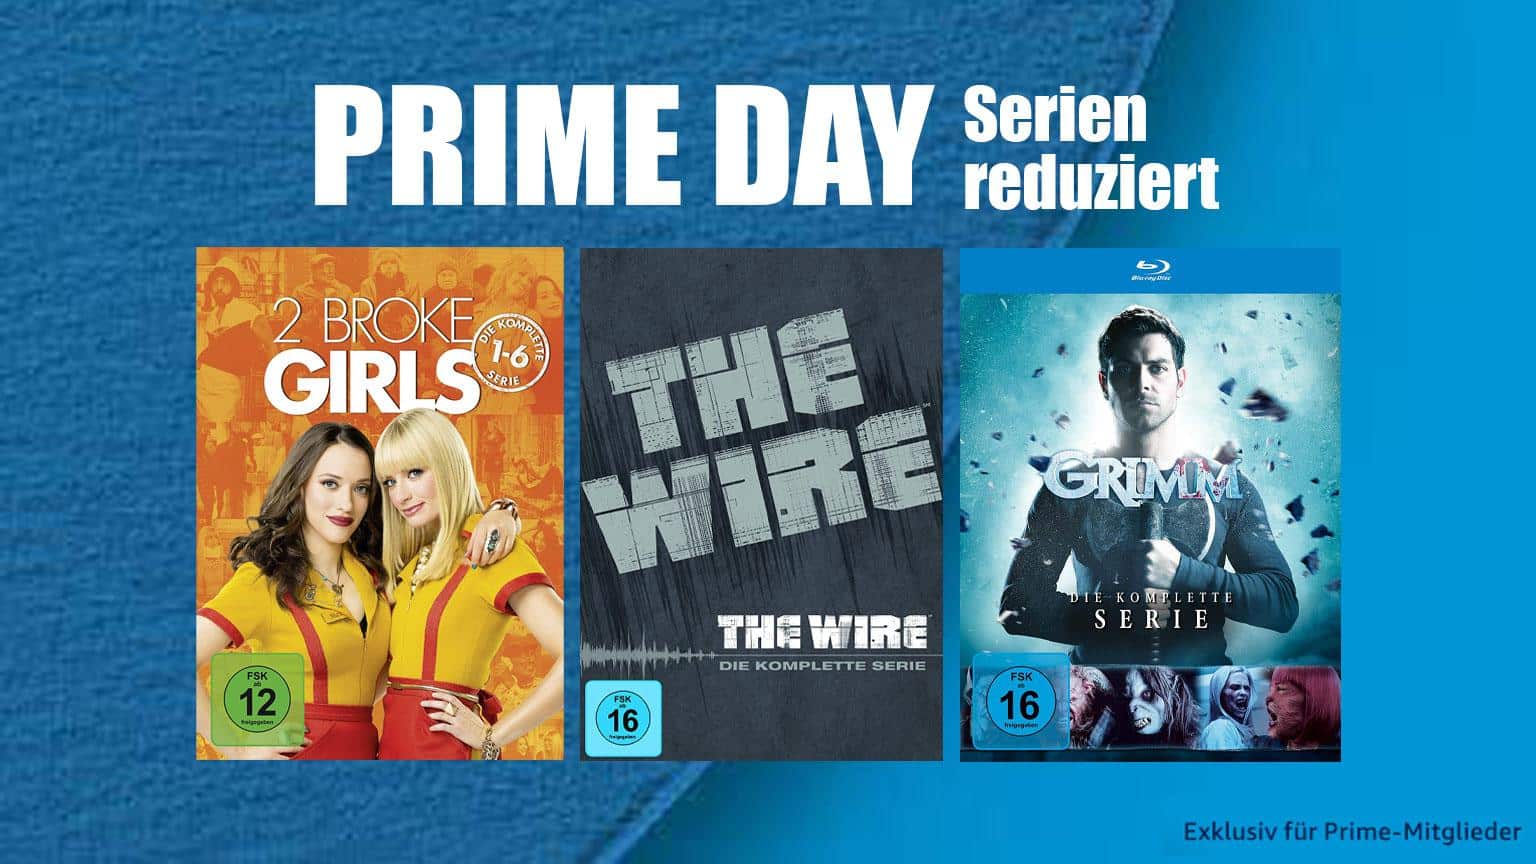 Prime Day 2020 TV Serien Blu-ray reduziert Deal Amazon.de sparen kaufen shop Artikelbild